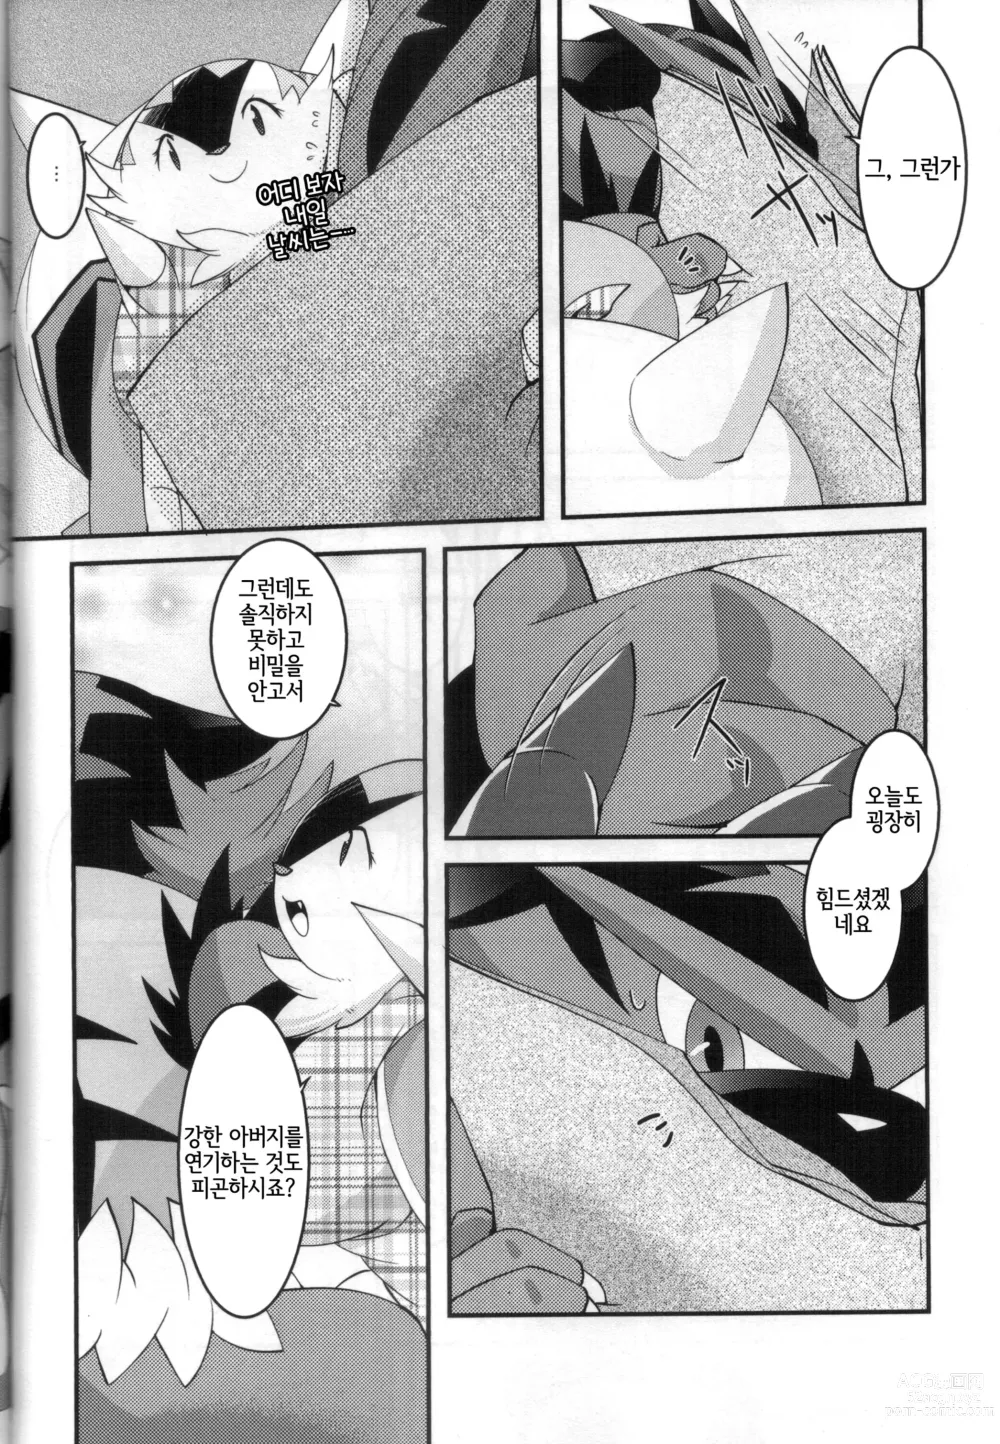 Page 9 of doujinshi 아빠도 엄마한테 어리광 부리고 싶어!